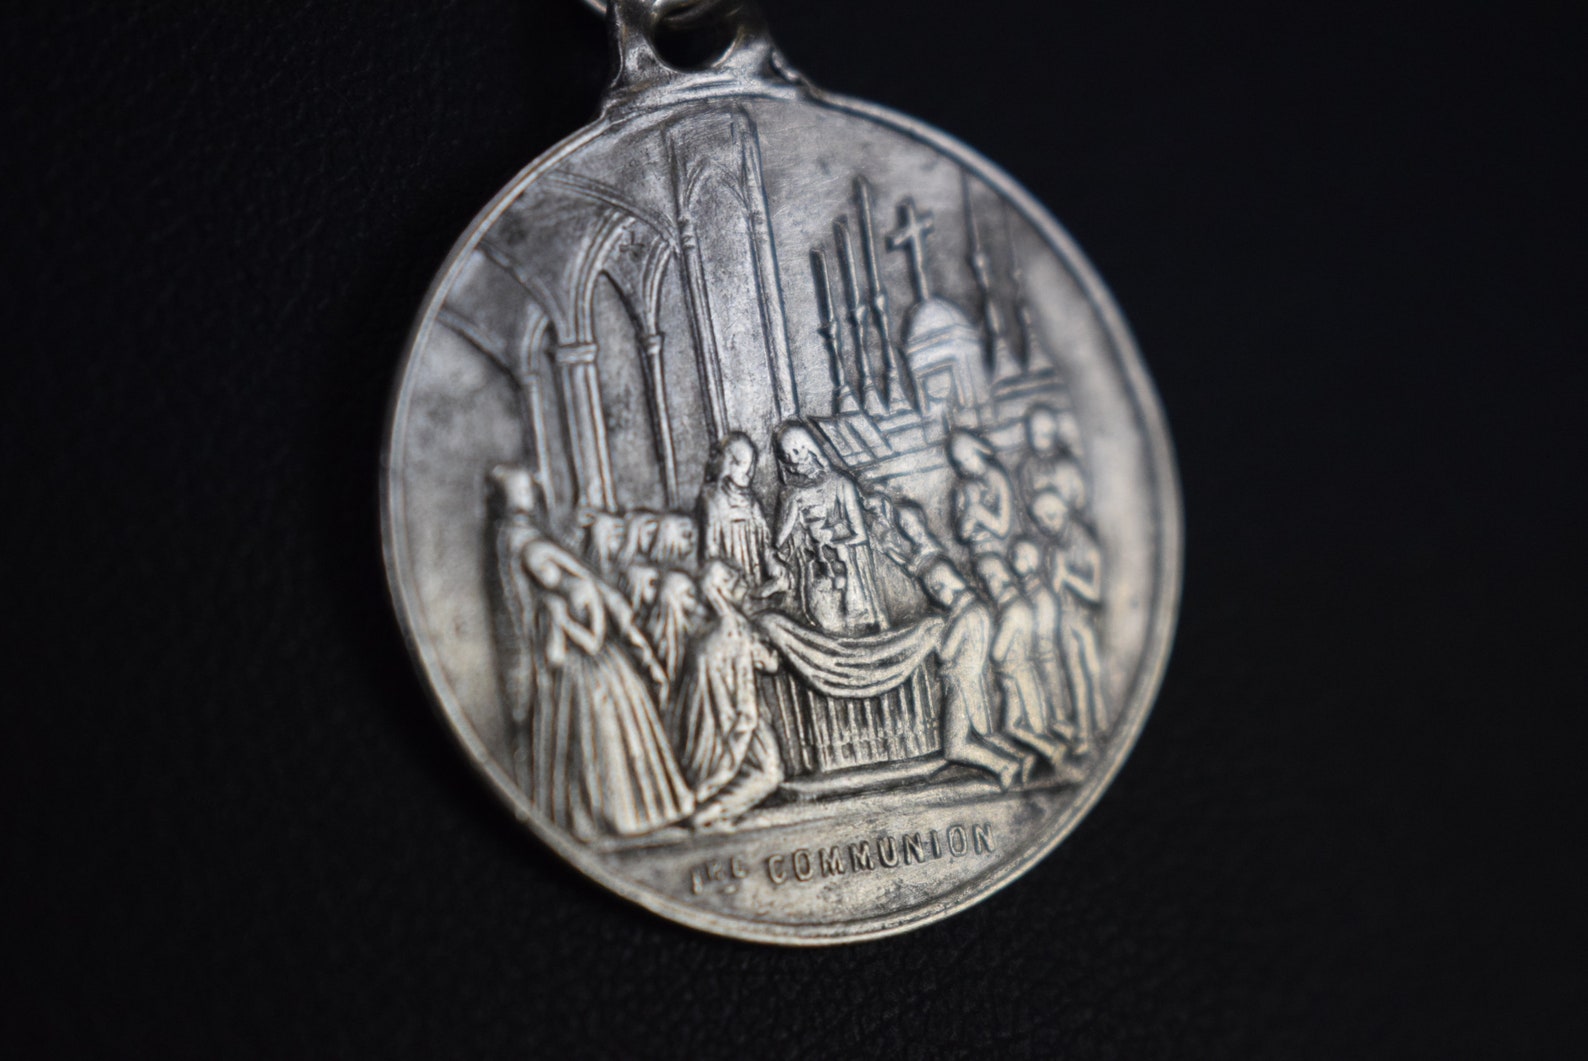 1st Communion pendant